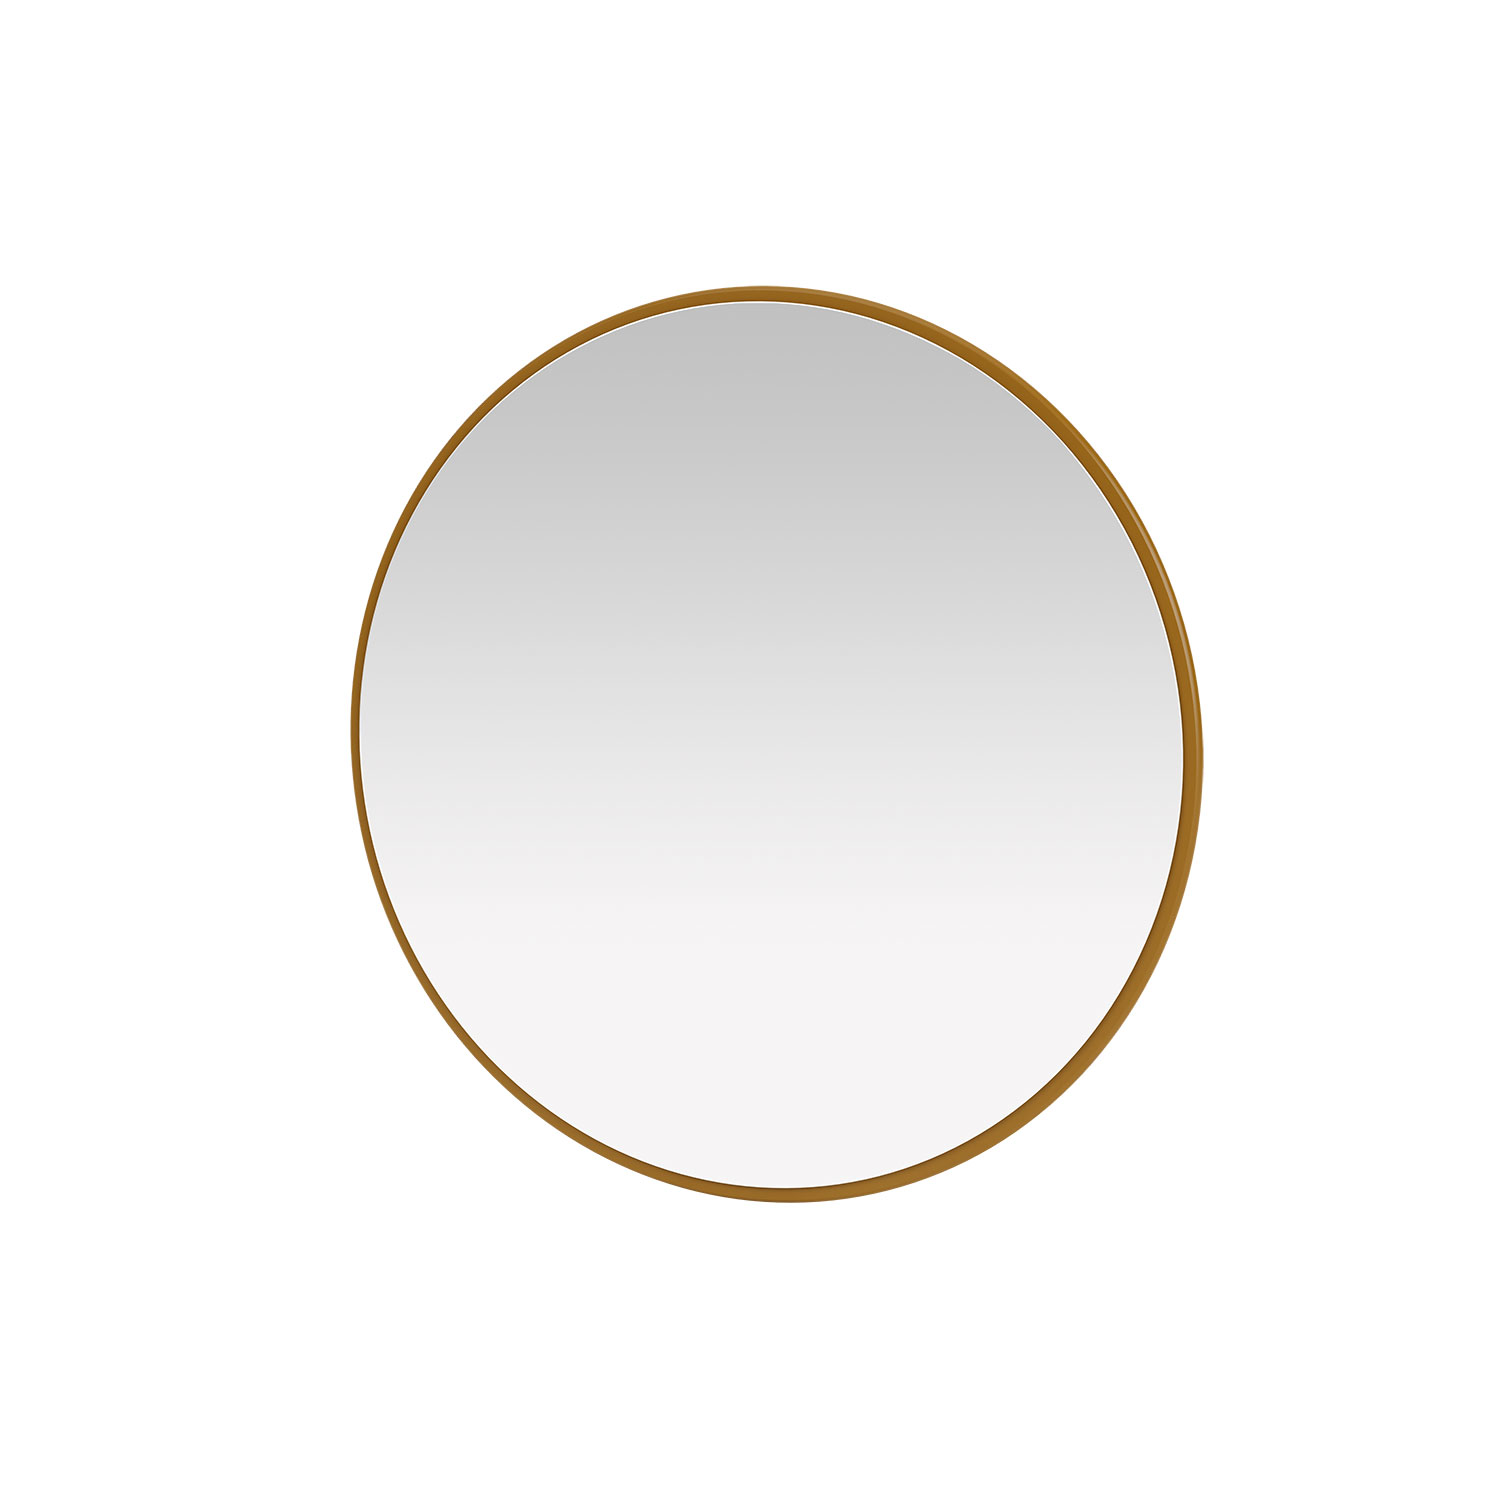 AROUND mirror, 21 colors